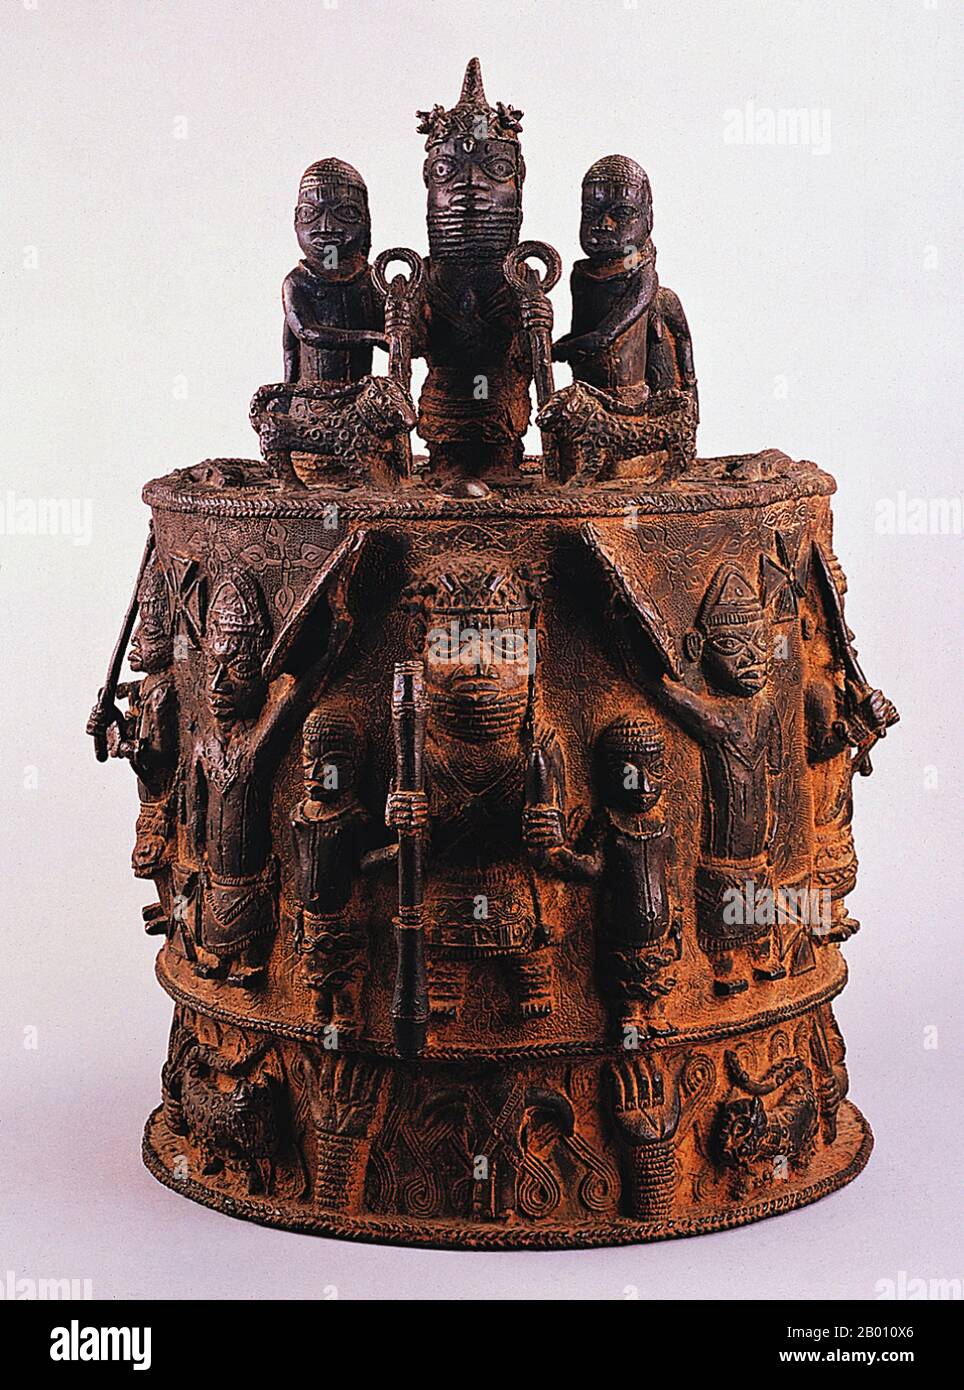 Nigeria : autel Edo en bronze du Royaume du Bénin, du XVIIe au XVIIIe siècle. L'Empire du Bénin (1440–1897) était un État africain précolonial dans ce qui est maintenant le Nigeria moderne. Il ne faut pas la confondre avec le pays moderne appelé Bénin (anciennement appelé Dahomey). Banque D'Images